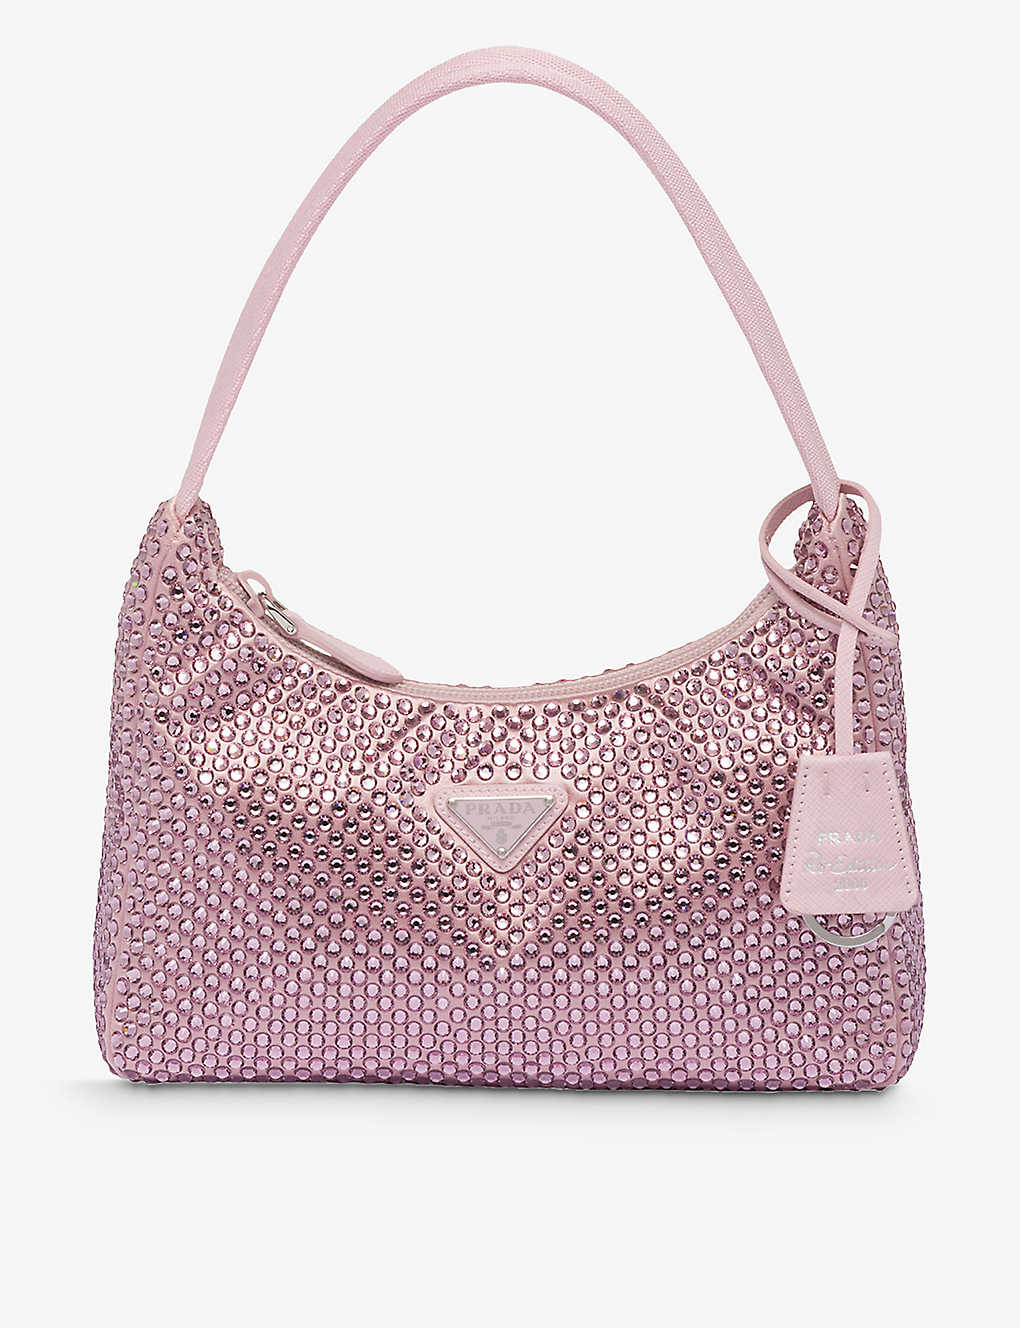 Prada Womens Pink Crystal-embellished Satin Shoulder Bag